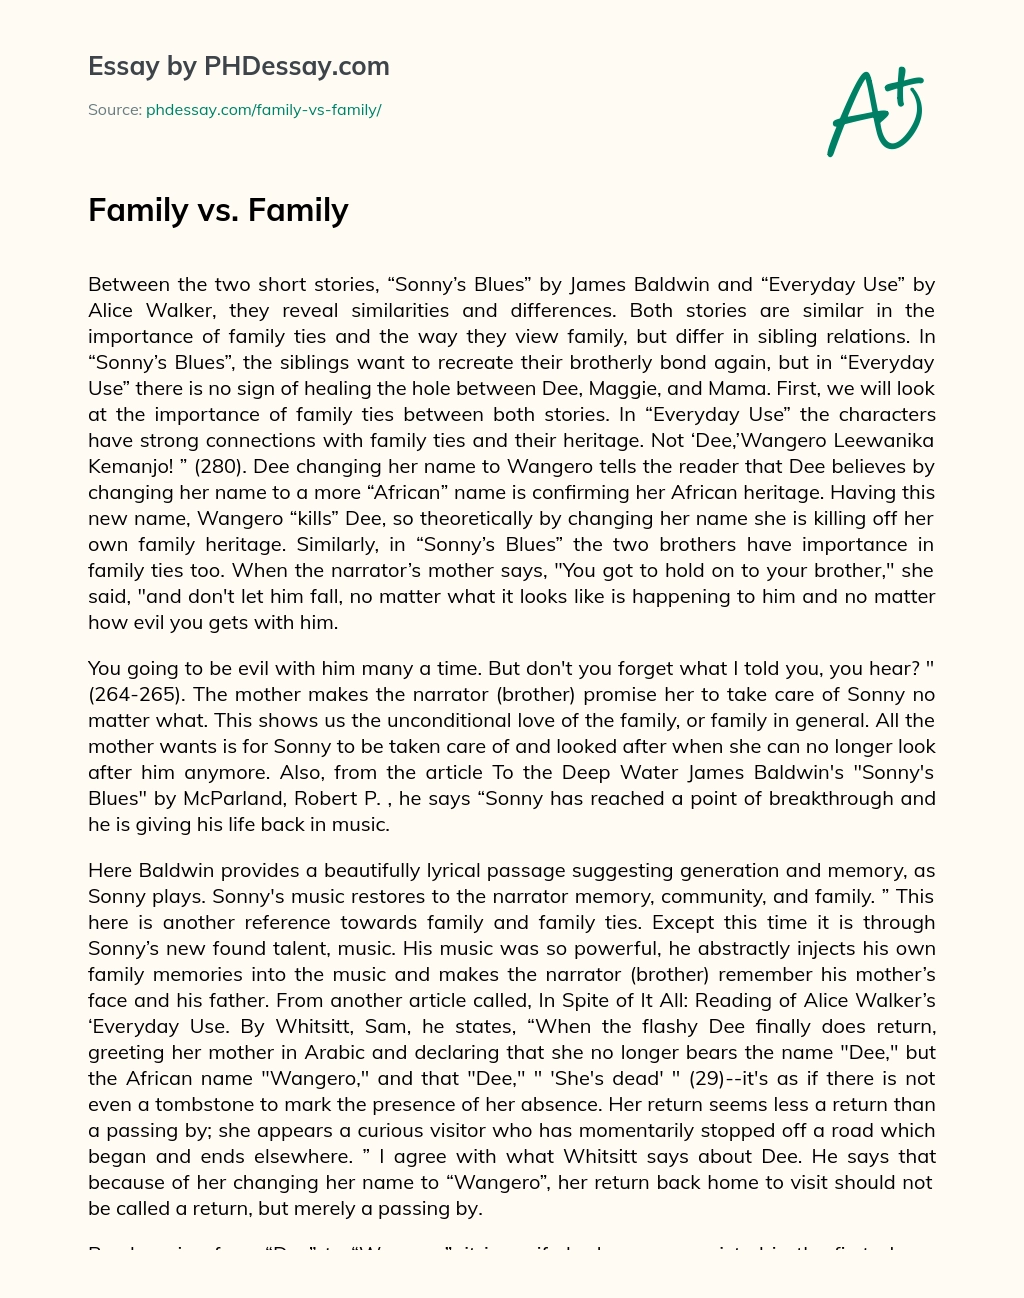 Family vs. Family essay